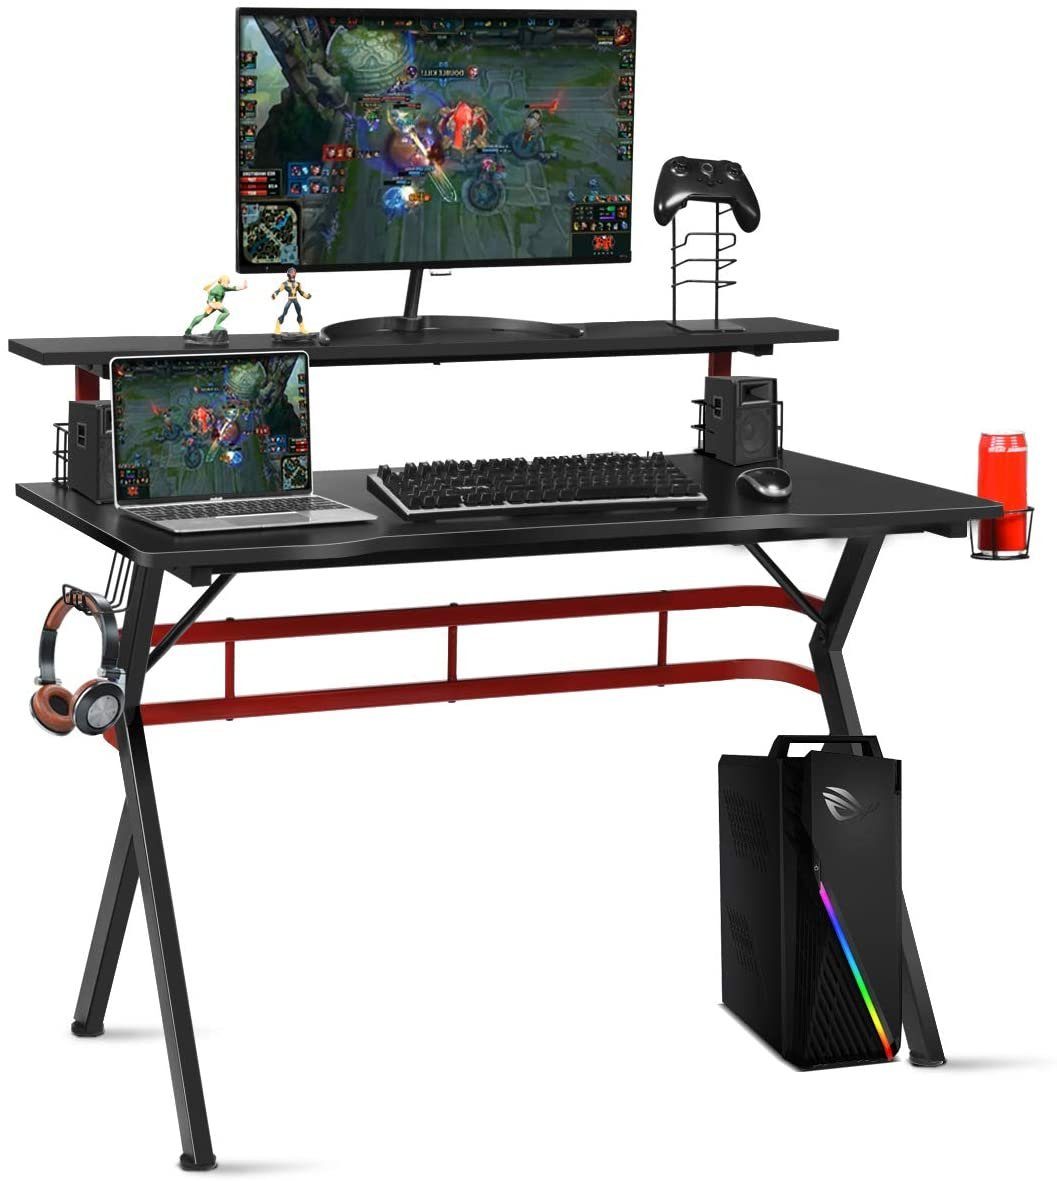 COSTWAY Gamingtisch, 120cm mit Monitorständer, Boxen-Ständern, 2 schwarz+rot Haken